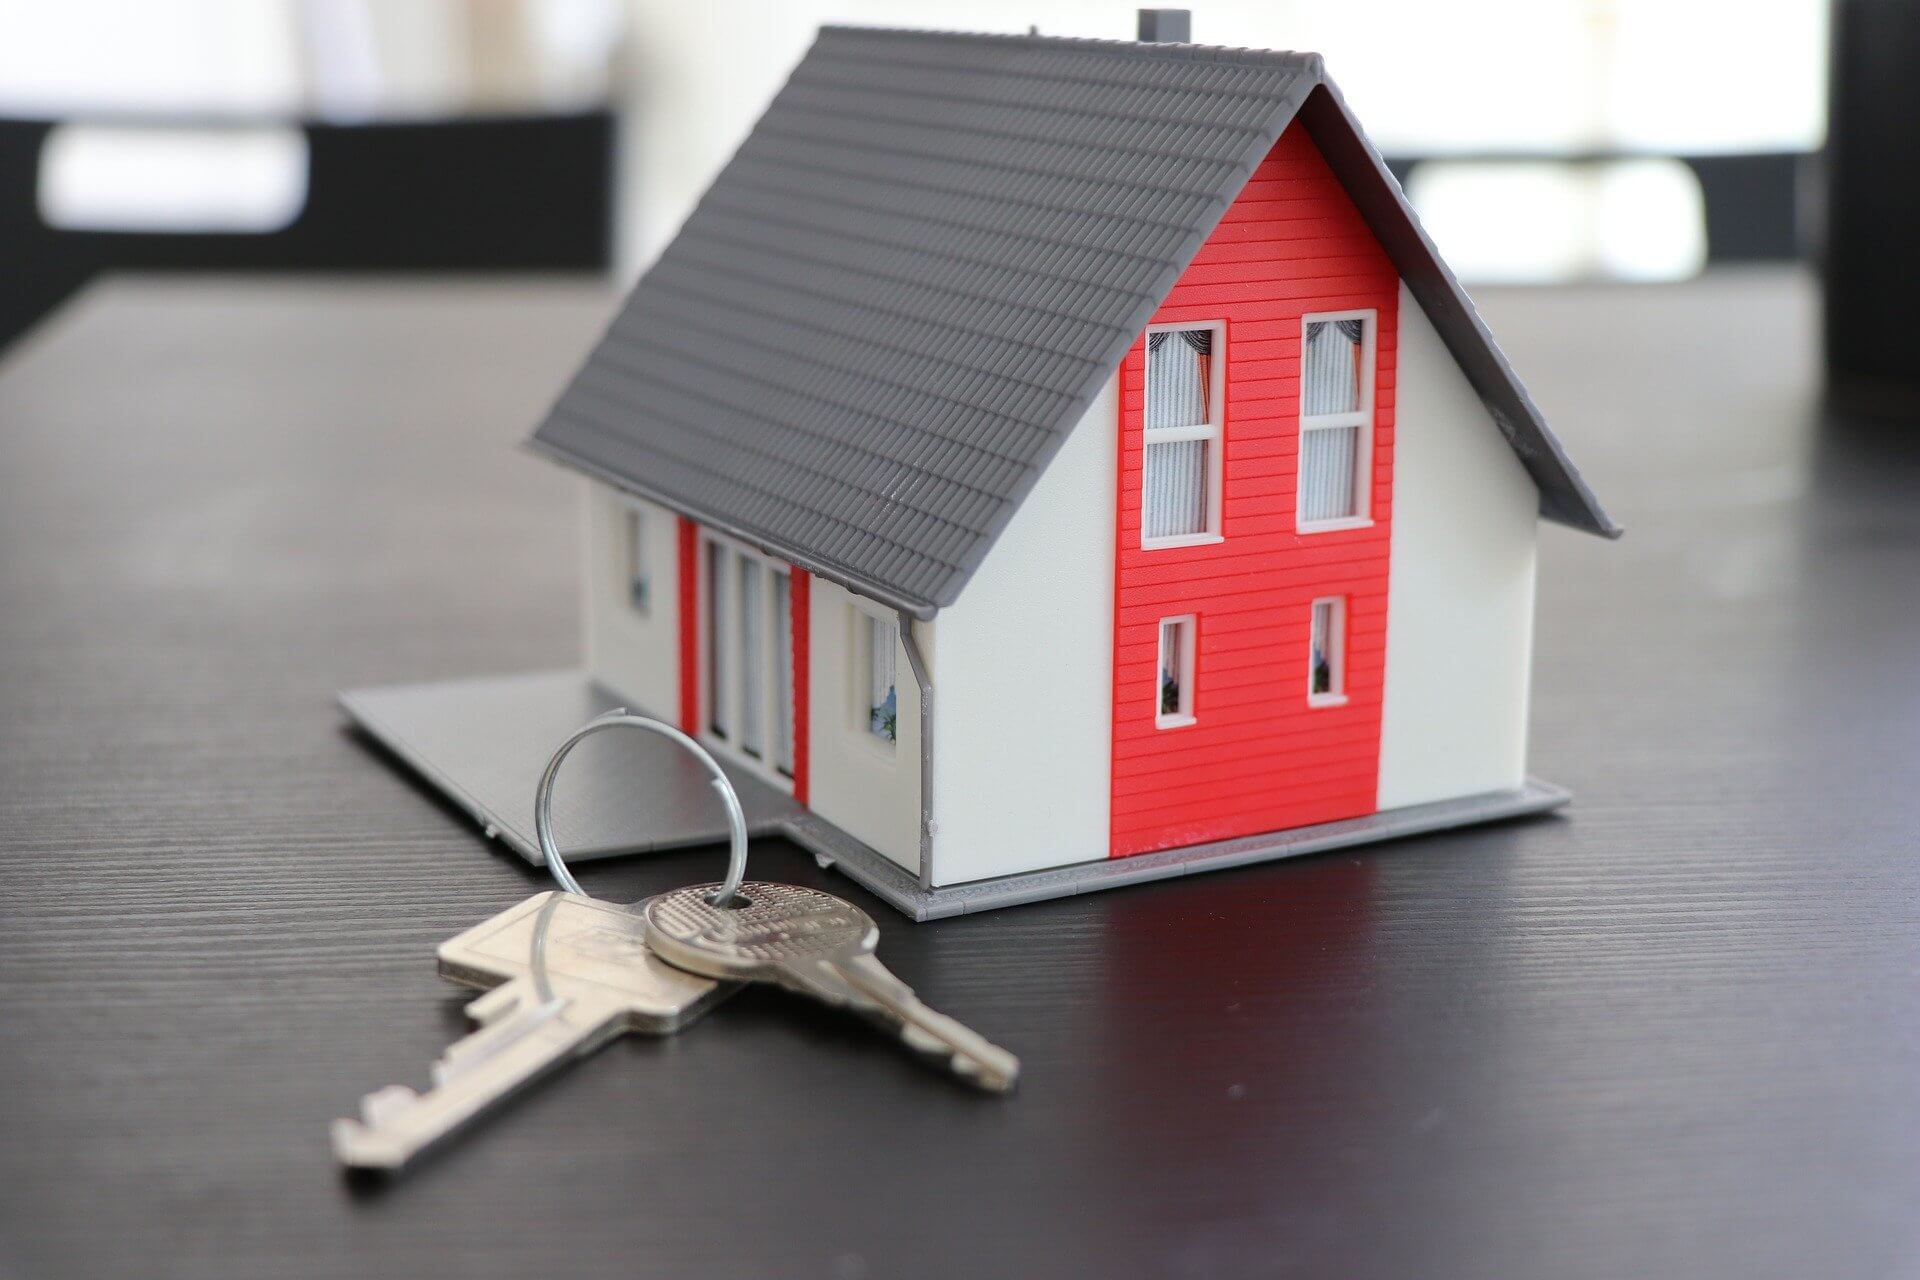 comprar casa 1 - uma maquete de uma casa cinza e vermelha sobre uma mesa de madeira escura e um molho de chaves